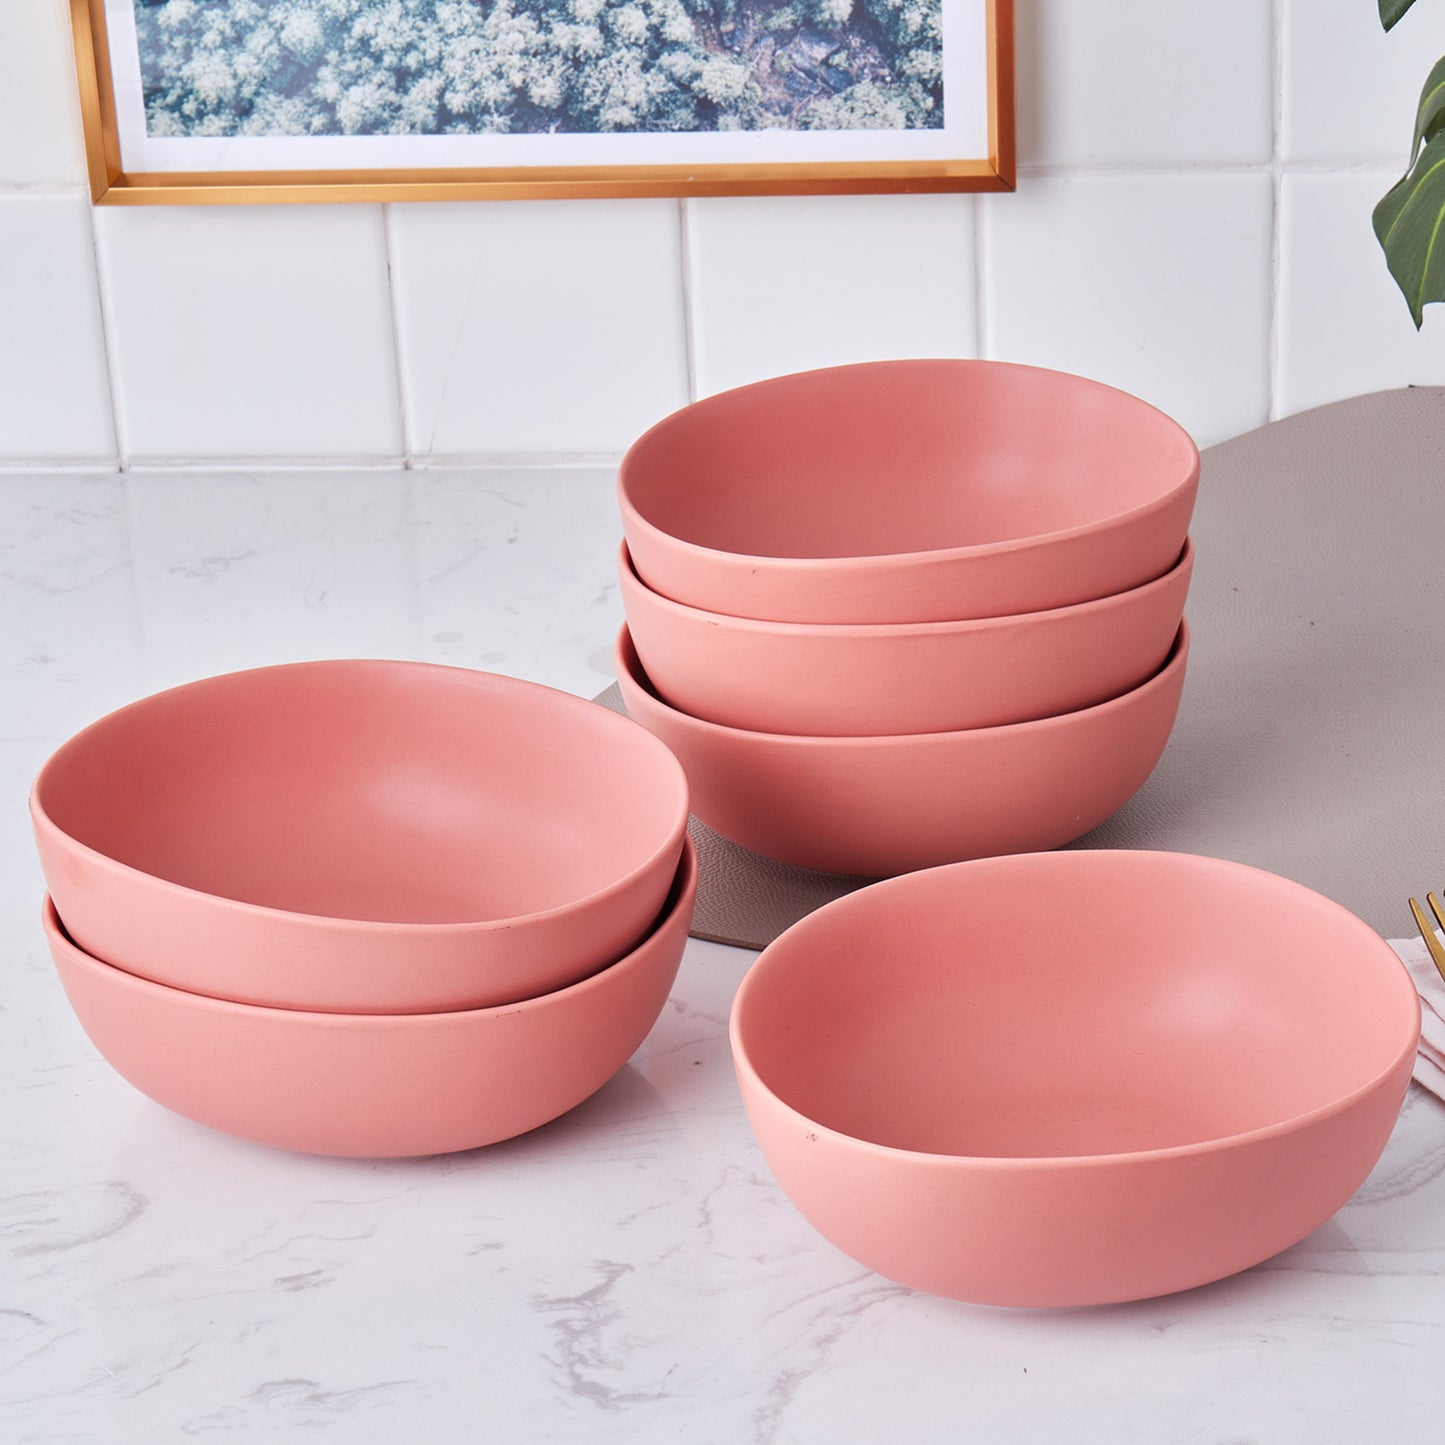 Delilah Porcelain Bowl Set - Set of 6